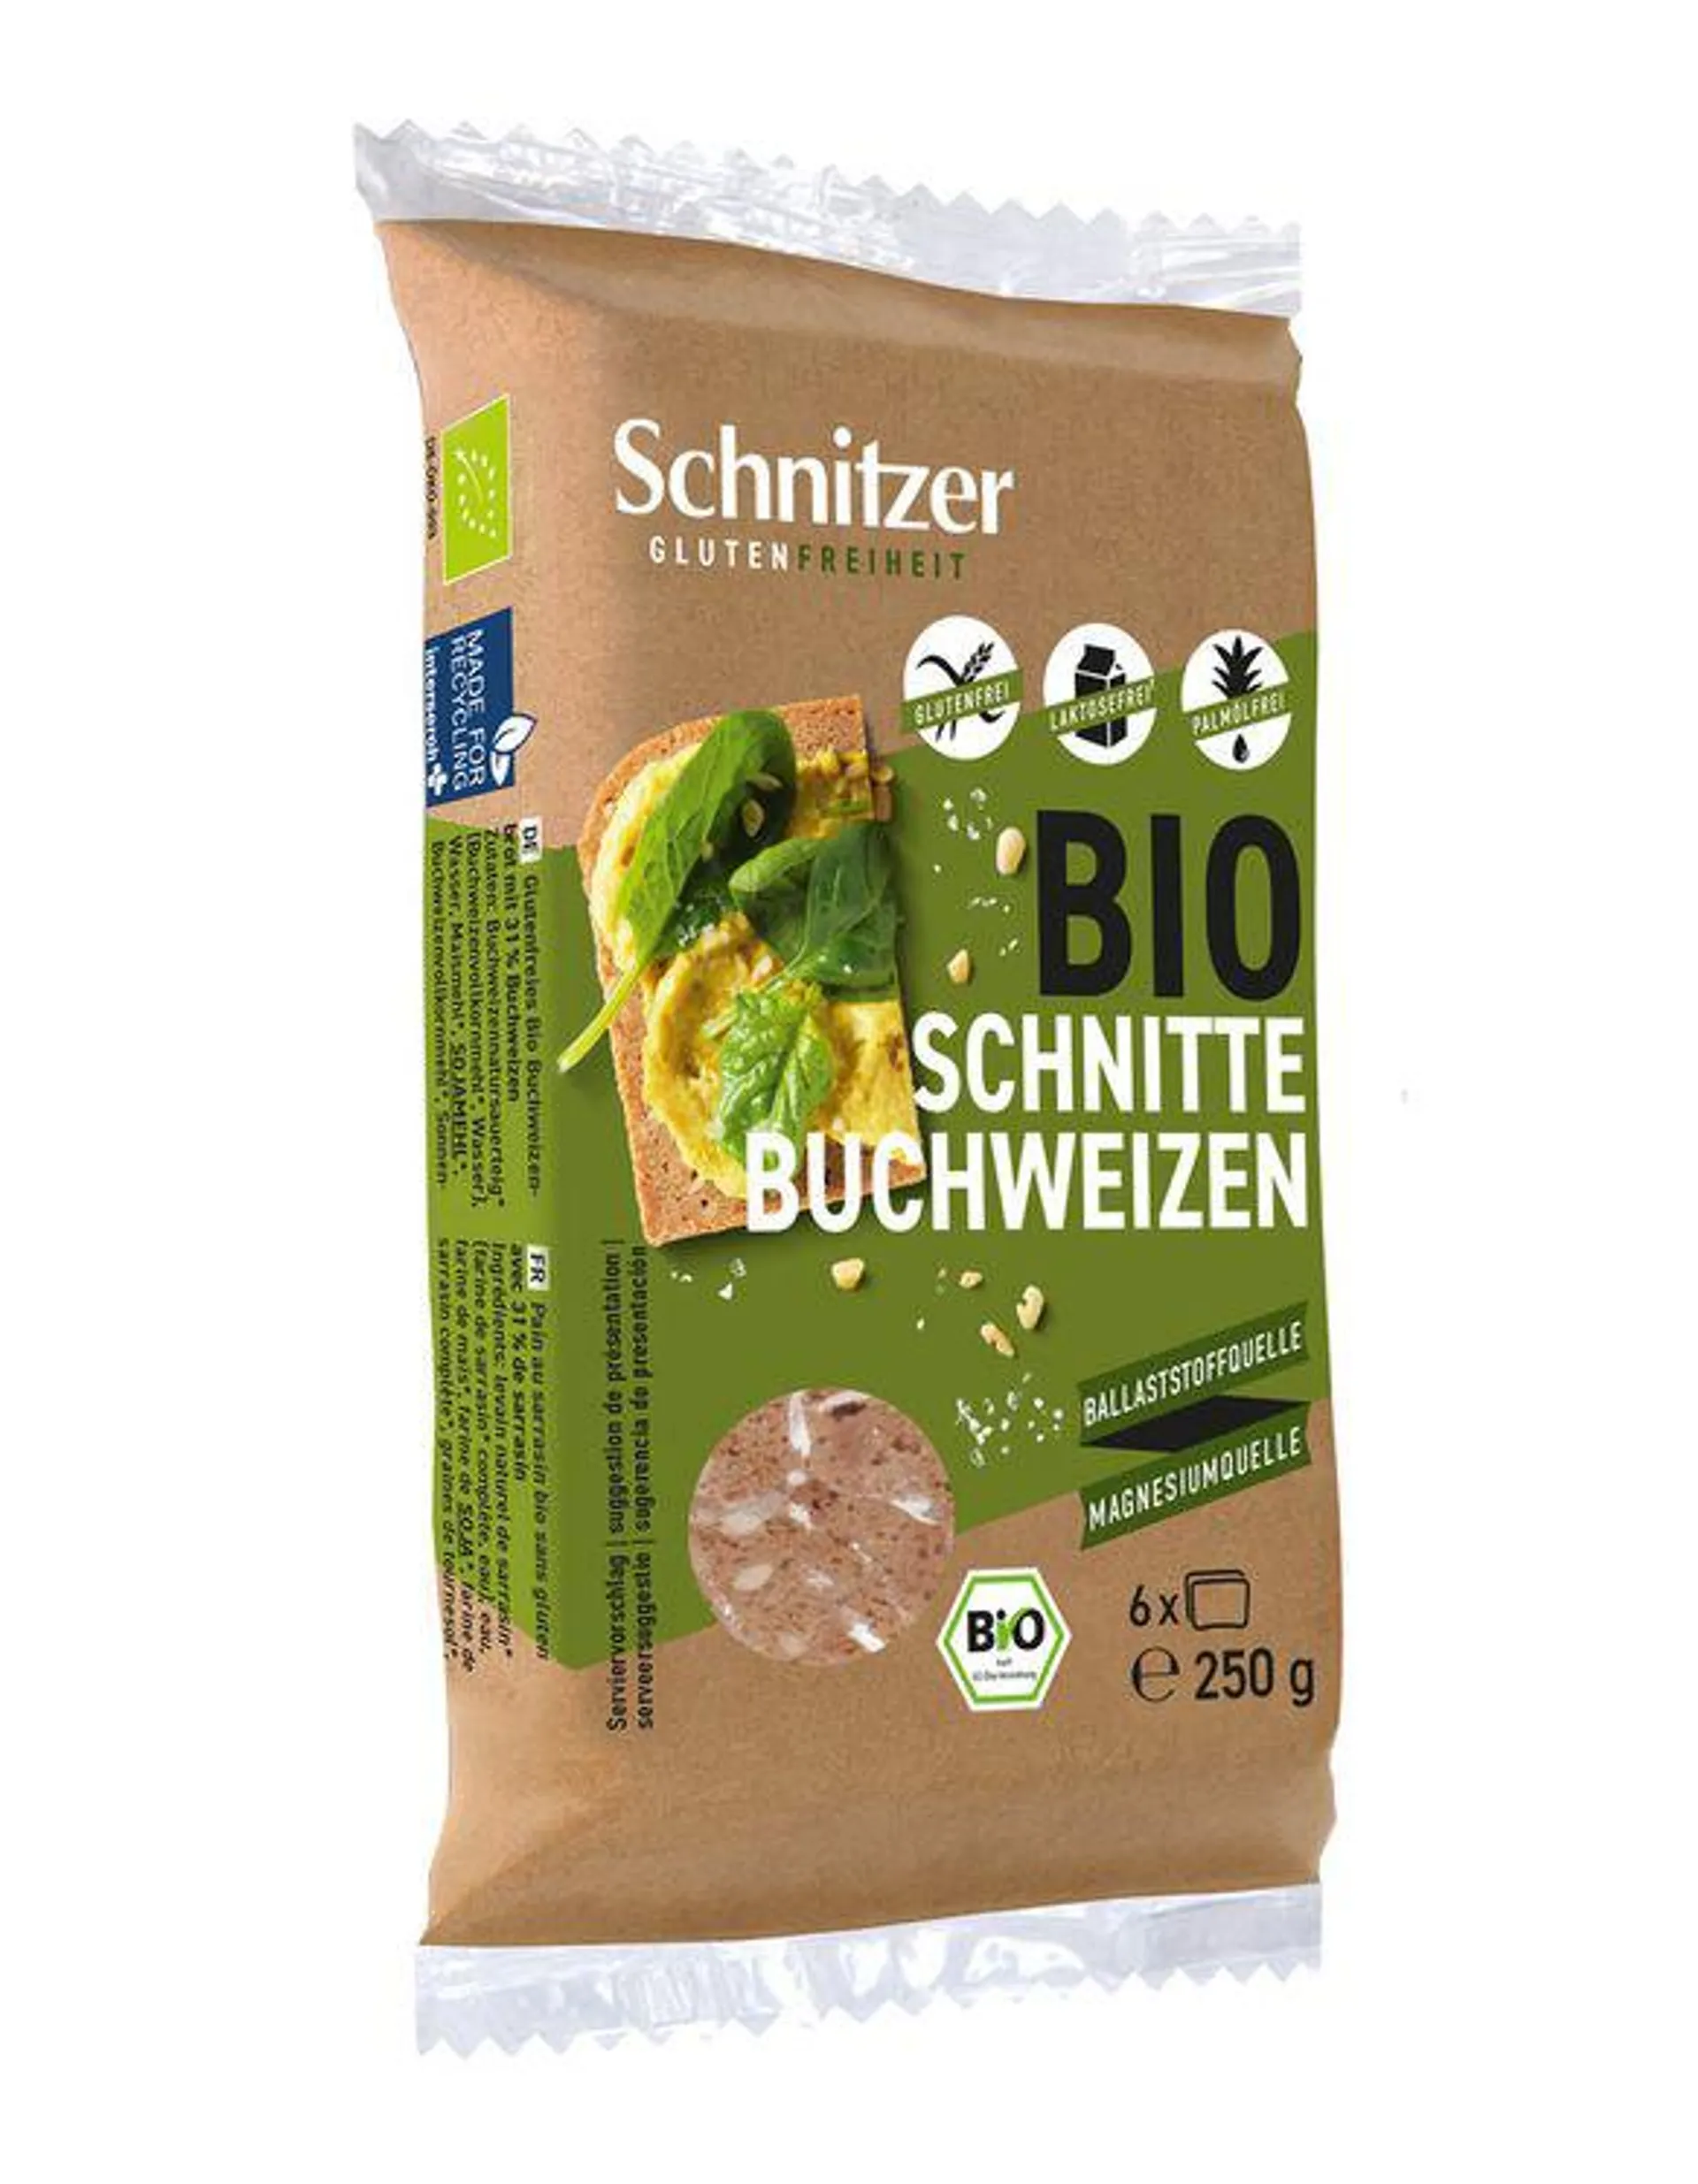 Schnitzer - Bio Schnitte Buchweizen, glutenfrei, 250g